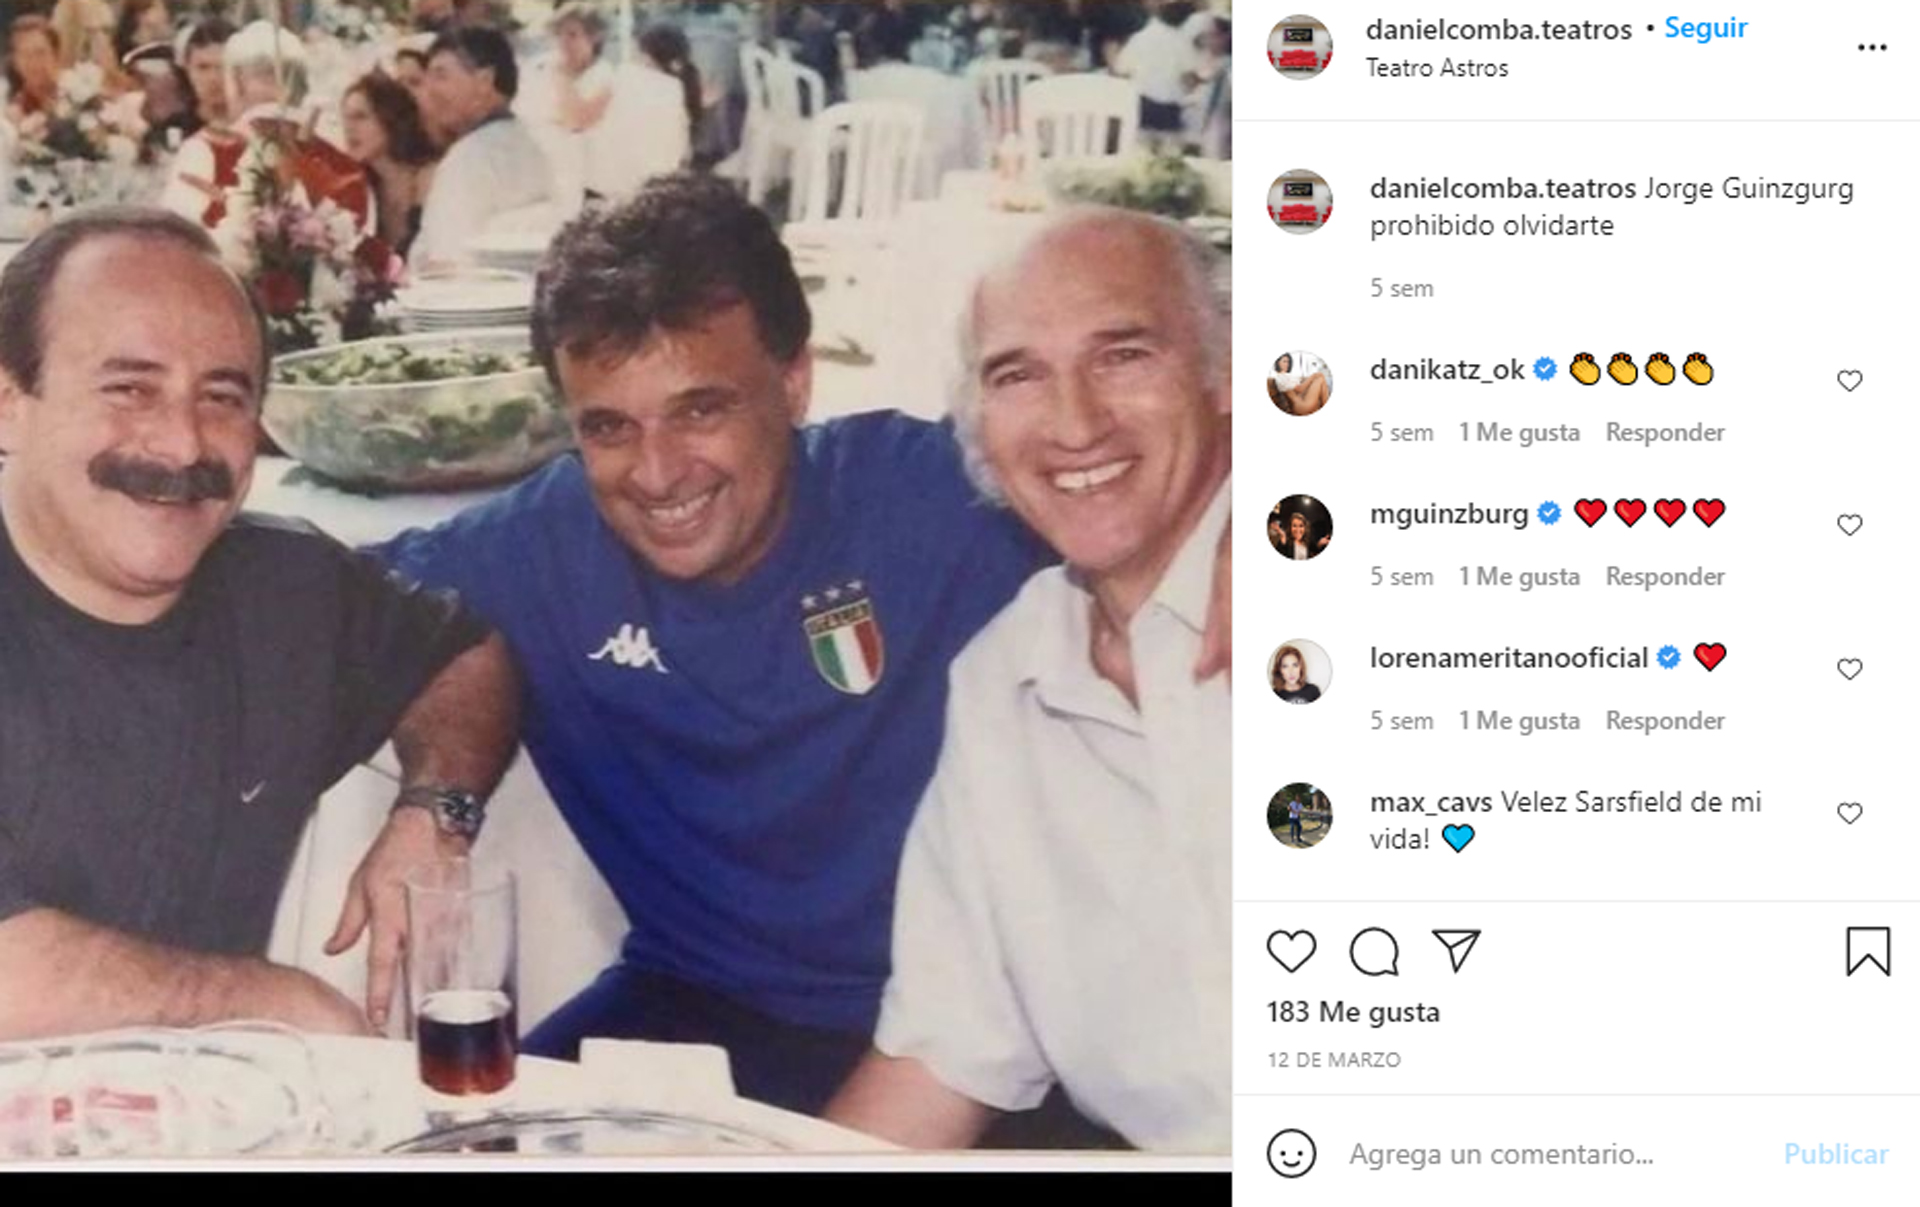 El último posteo de Daniel Comba en su Instagram, junto a sus amigos Jorge Guinzburg y Carlos Bianchi (Foto: Instagram @danielcomba.teatros)